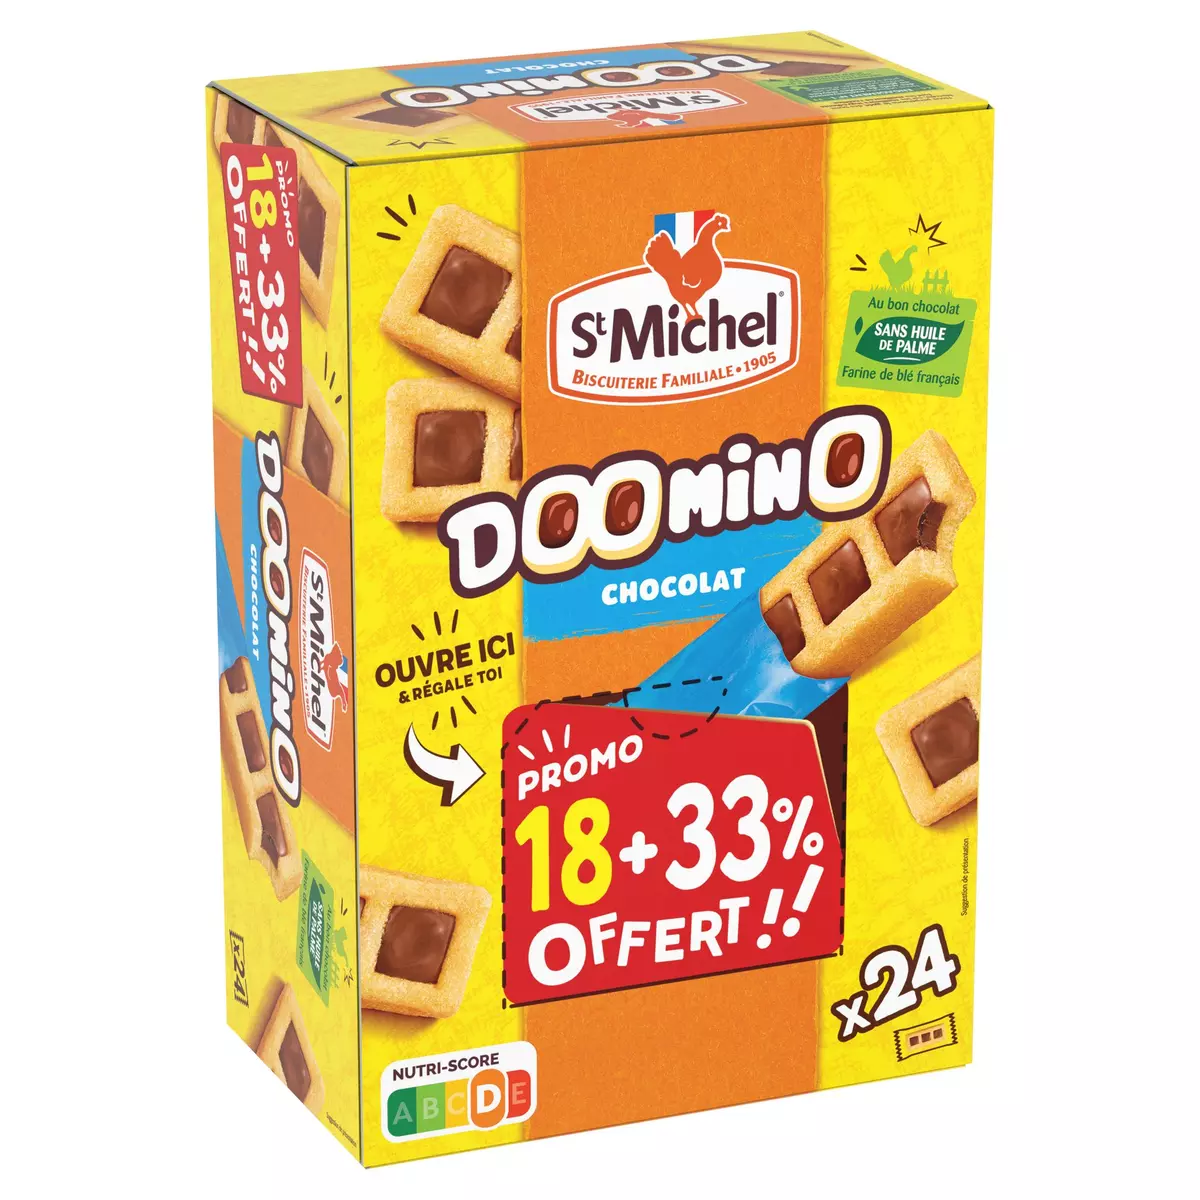 ST MICHEL Doomino biscuits au chocolat 18+33%offert 720g